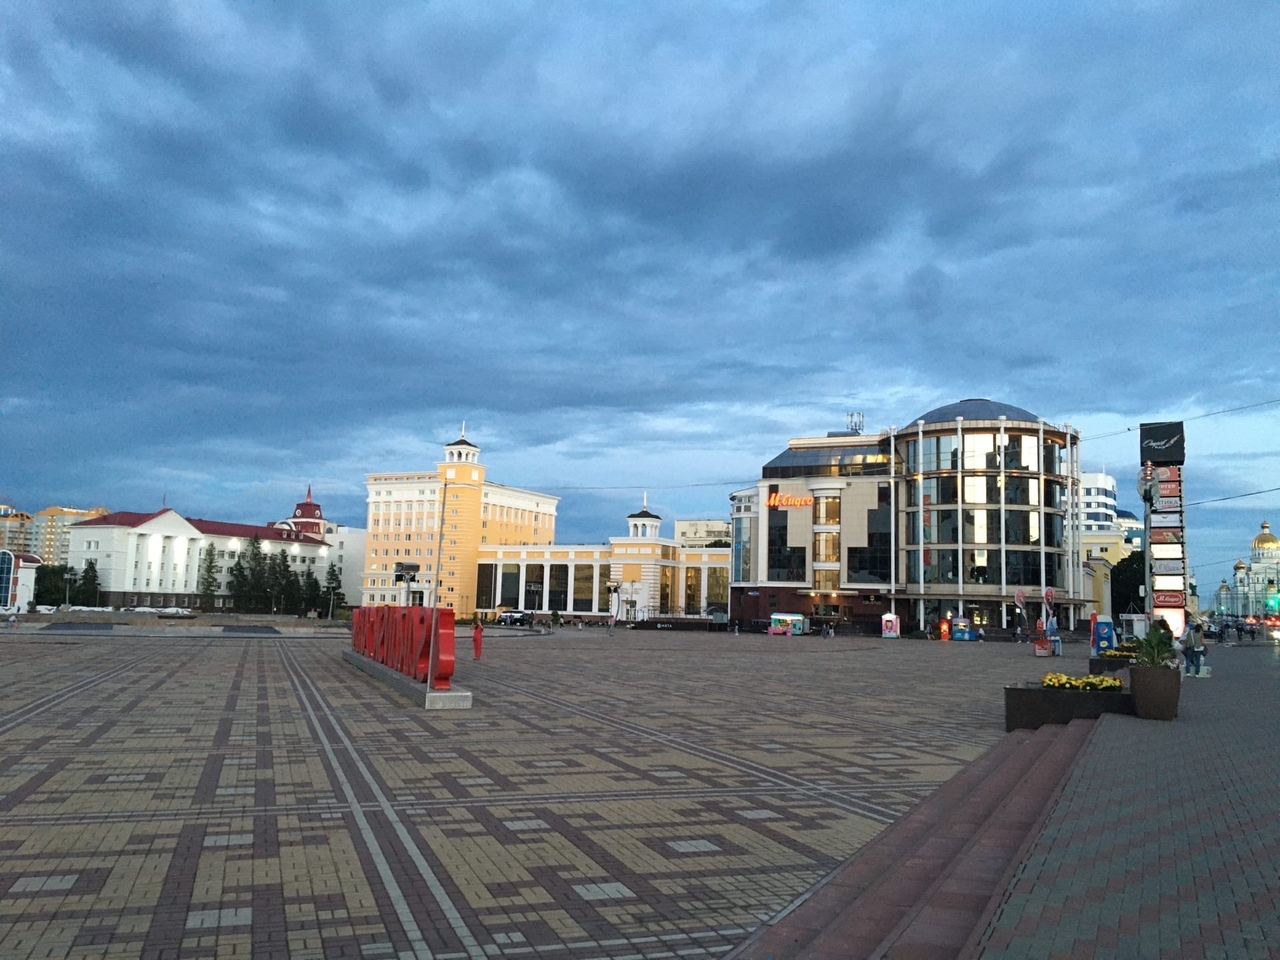 МЧС предупредило жителей Мордовии о сильном ветре